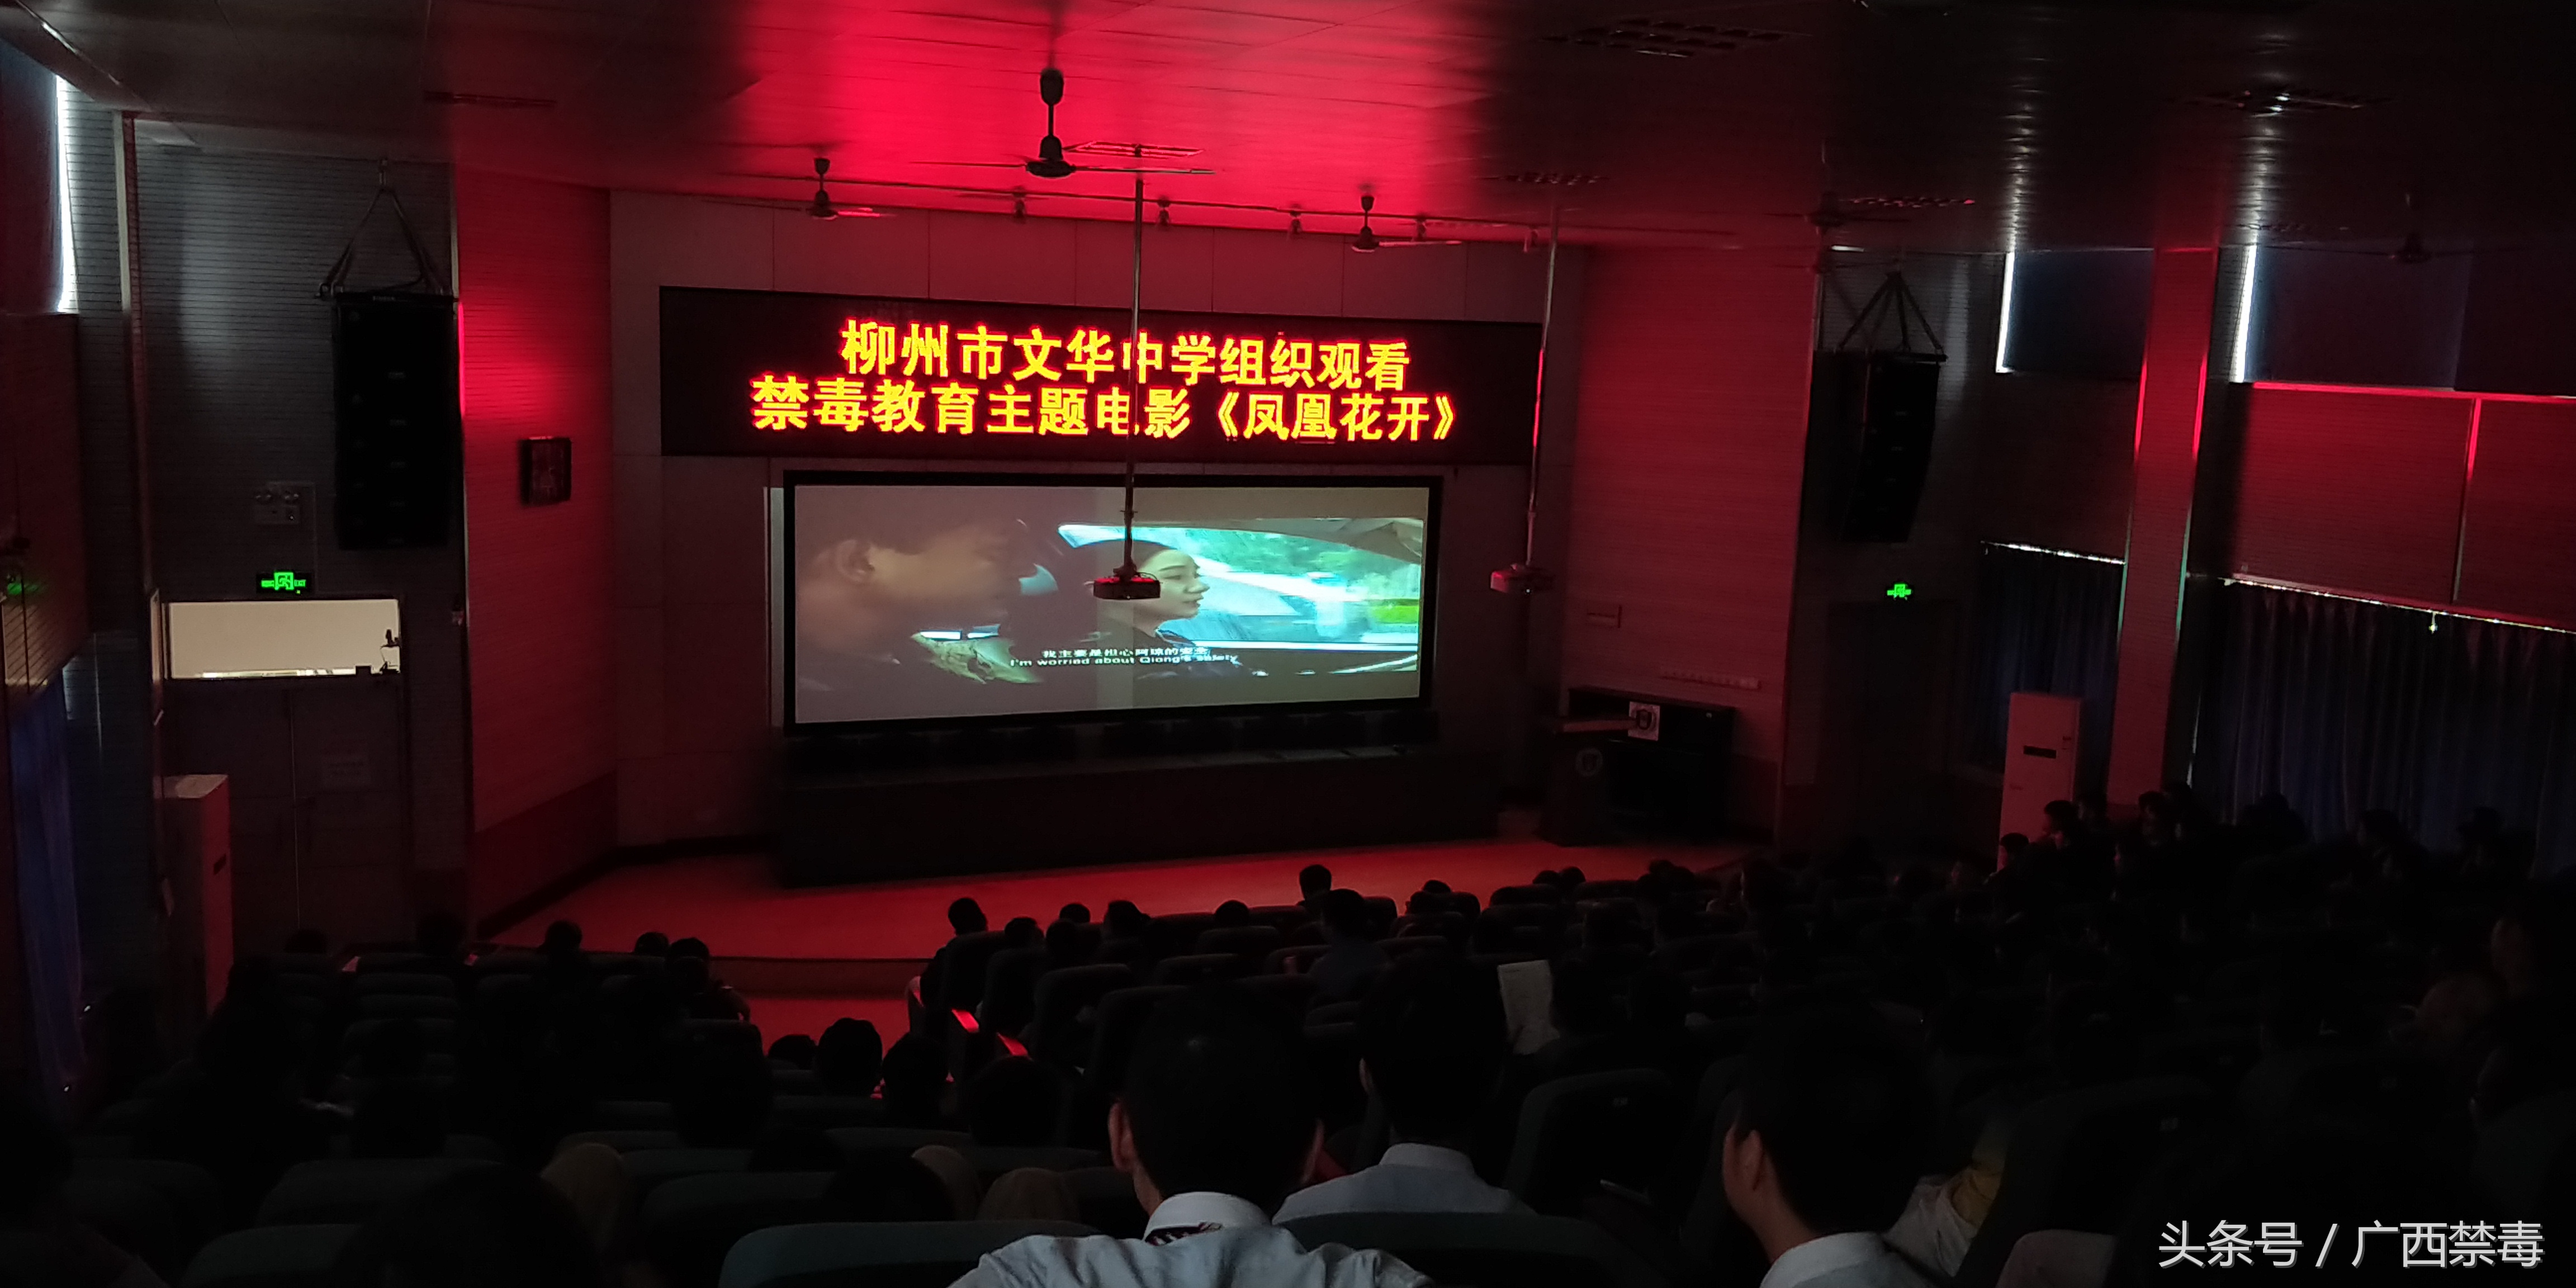 柳州市文华中学组织观看禁毒教育主题电影《凤凰花开》